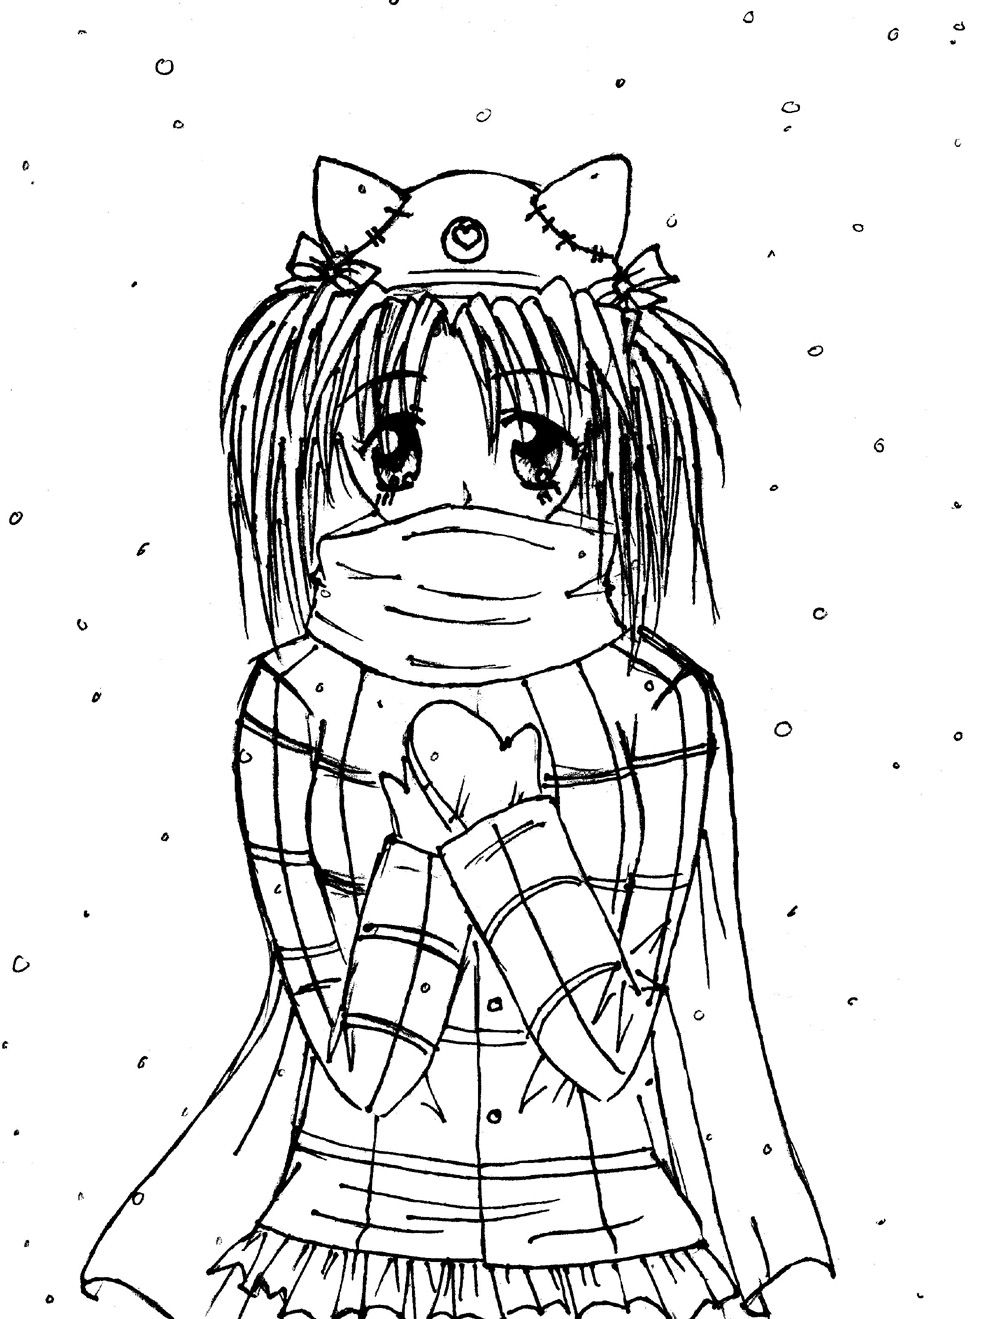 Winter Kiki! by Masume_Nezumi